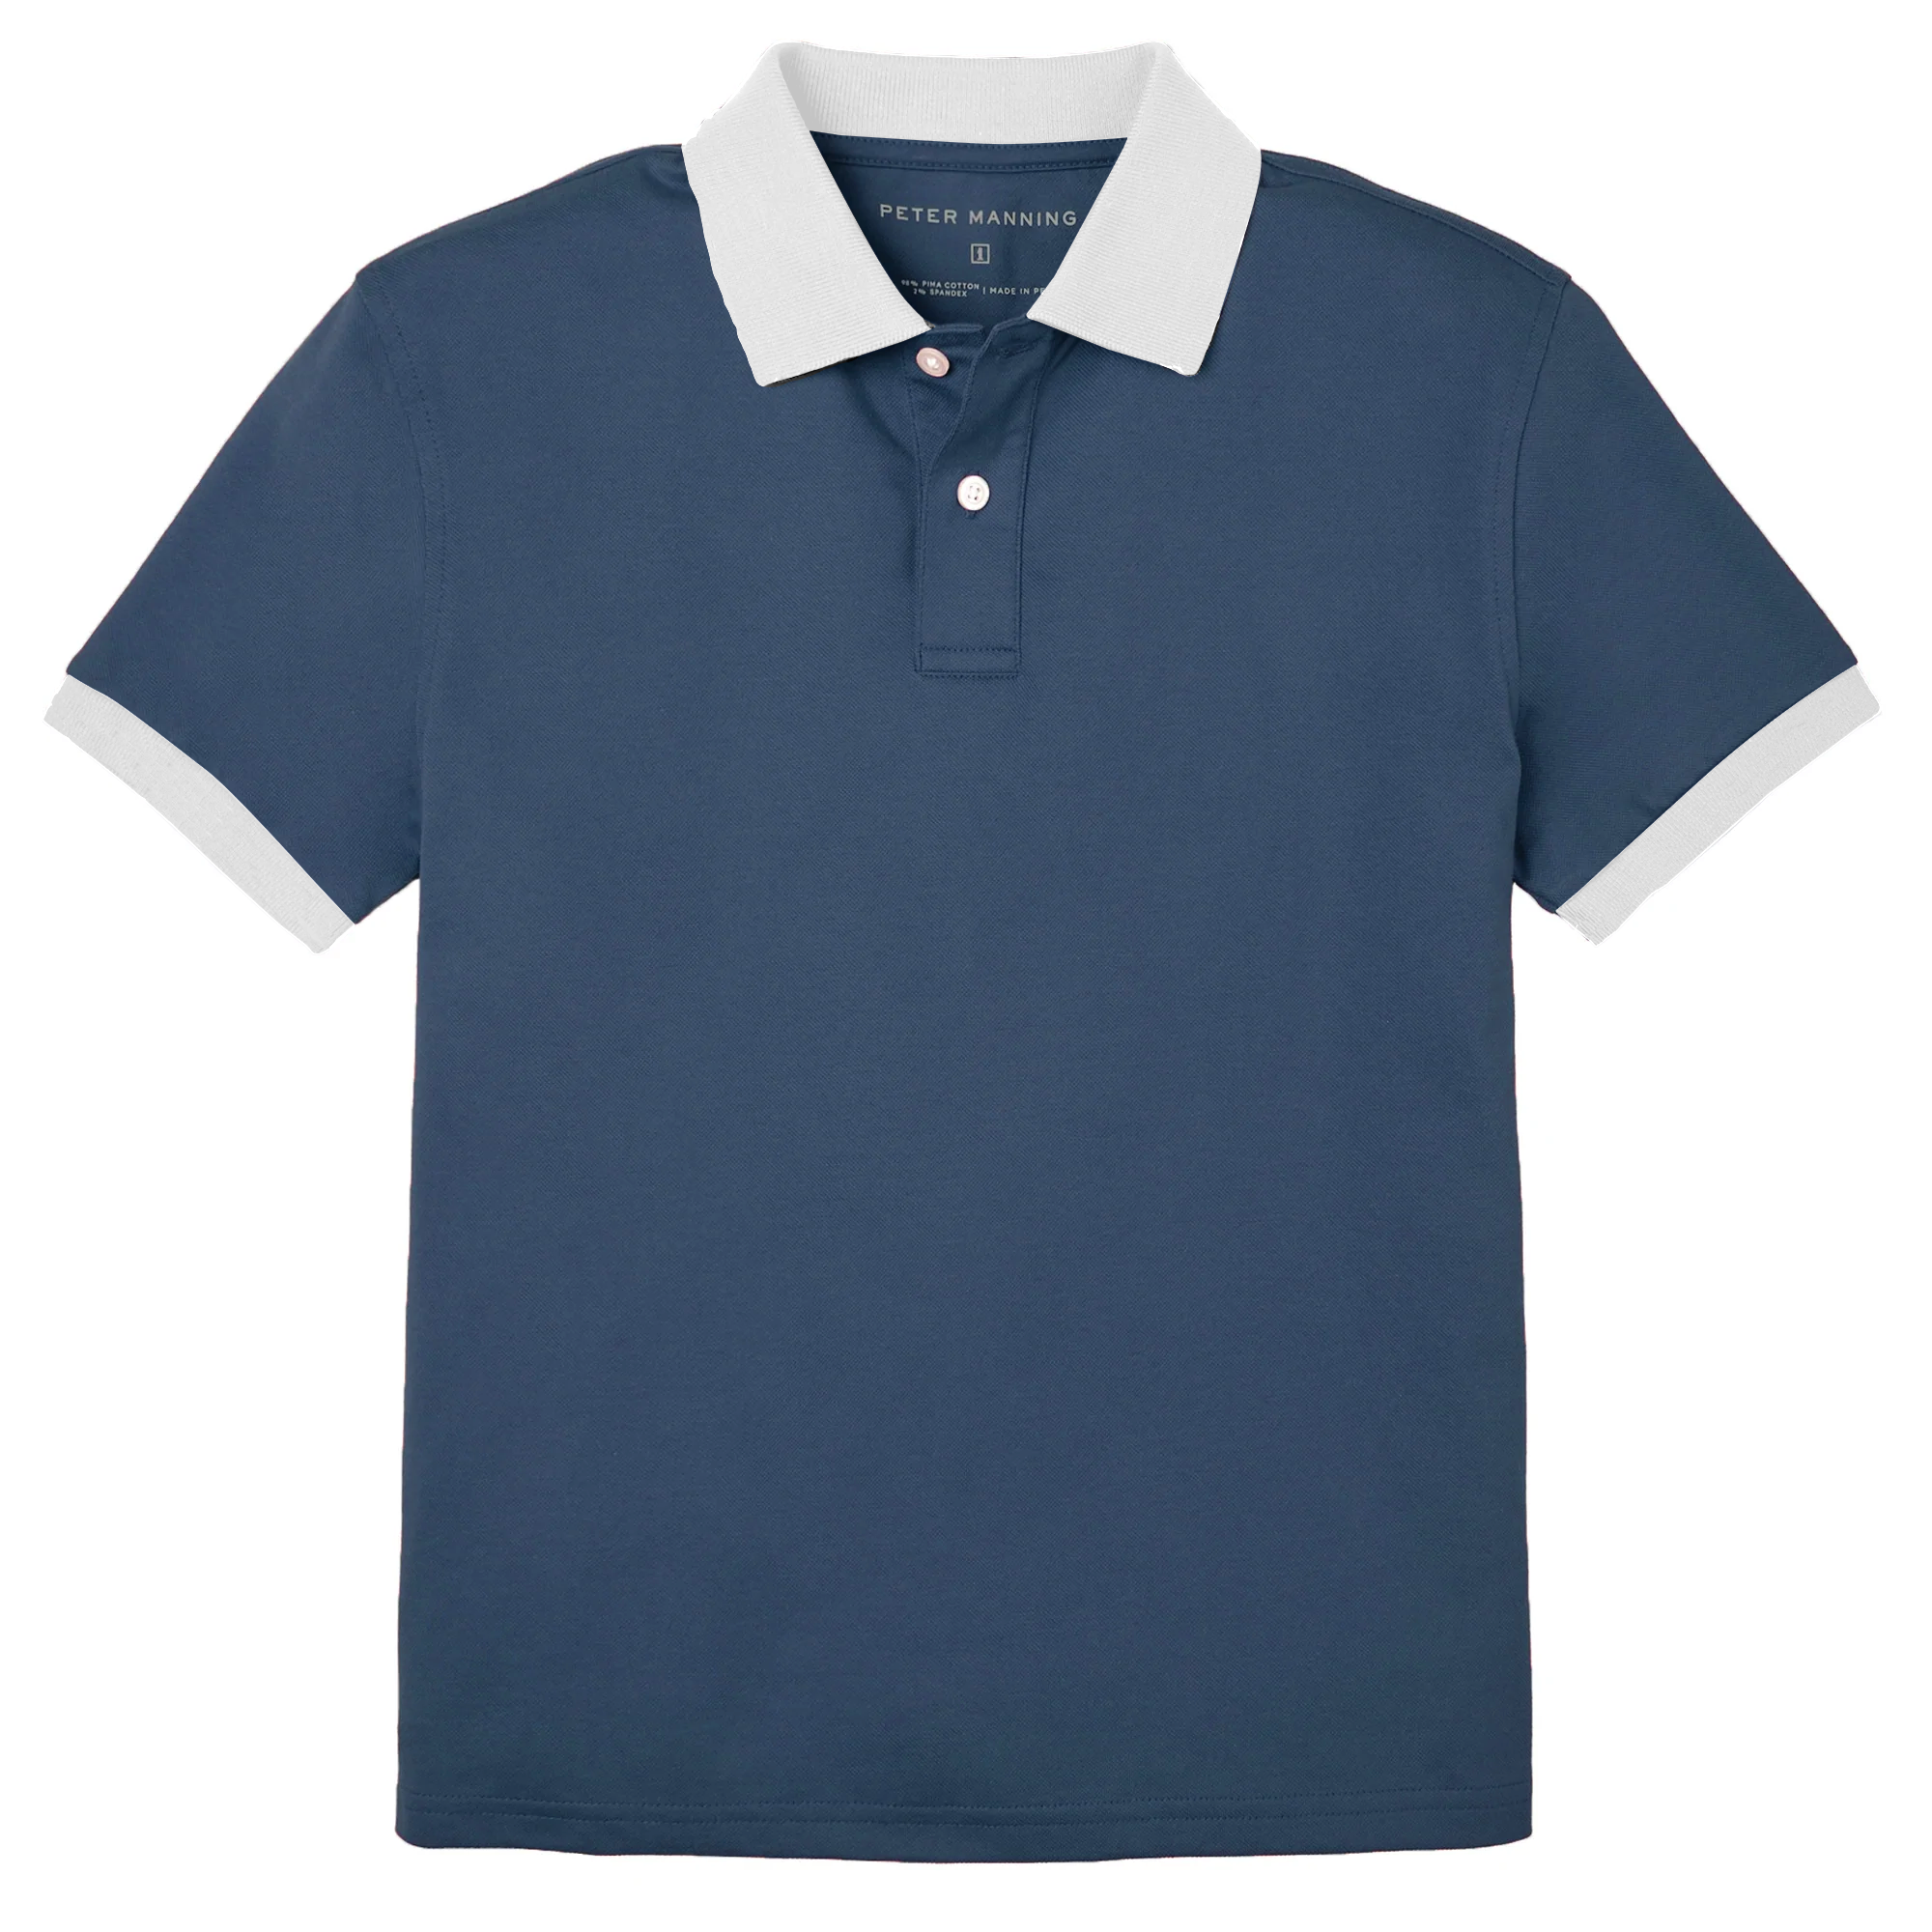 James Polo Shirt - Original Navy Tipped